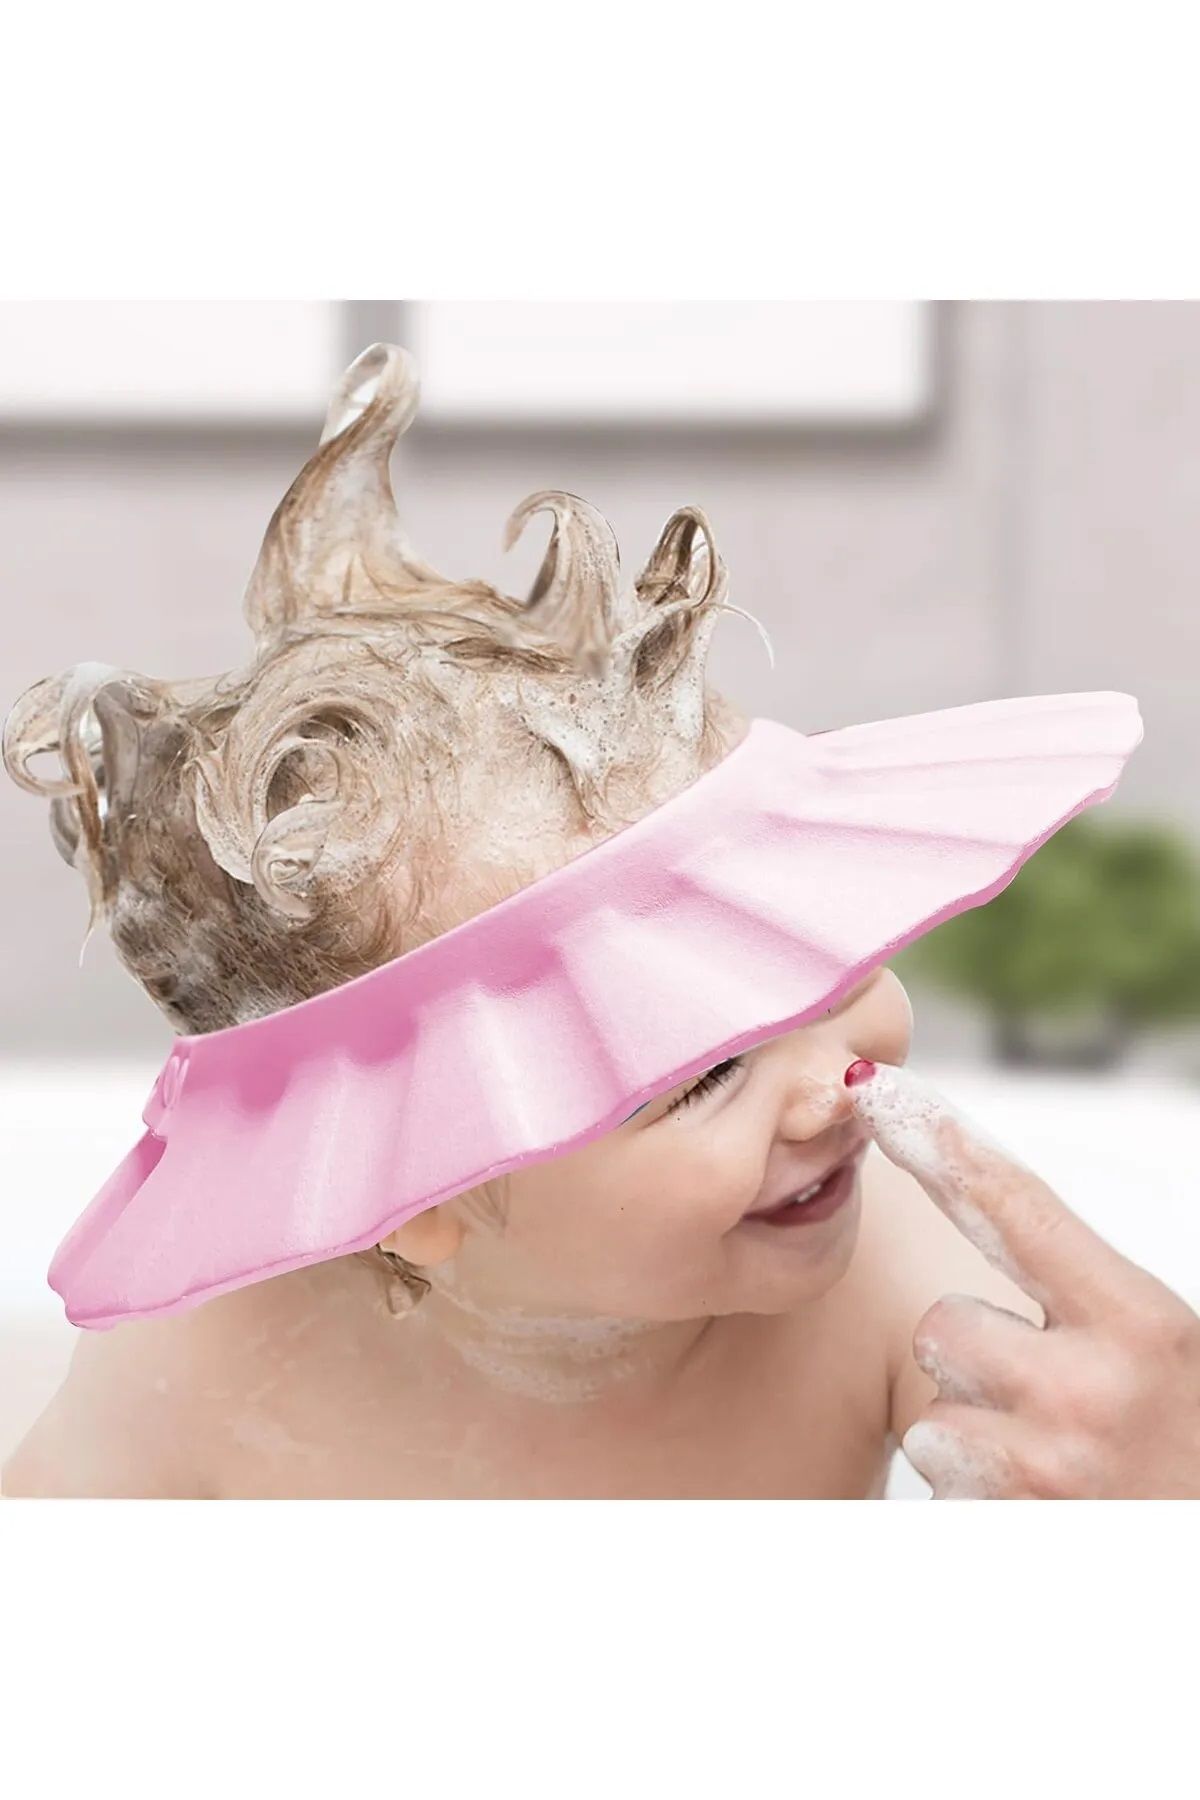 Bebek Duş Başlığı, Bebek Güneş Şapkası Göz, Ağız ve Kulaklara Su Kaçmasını Önleyeci Pembe Şapka